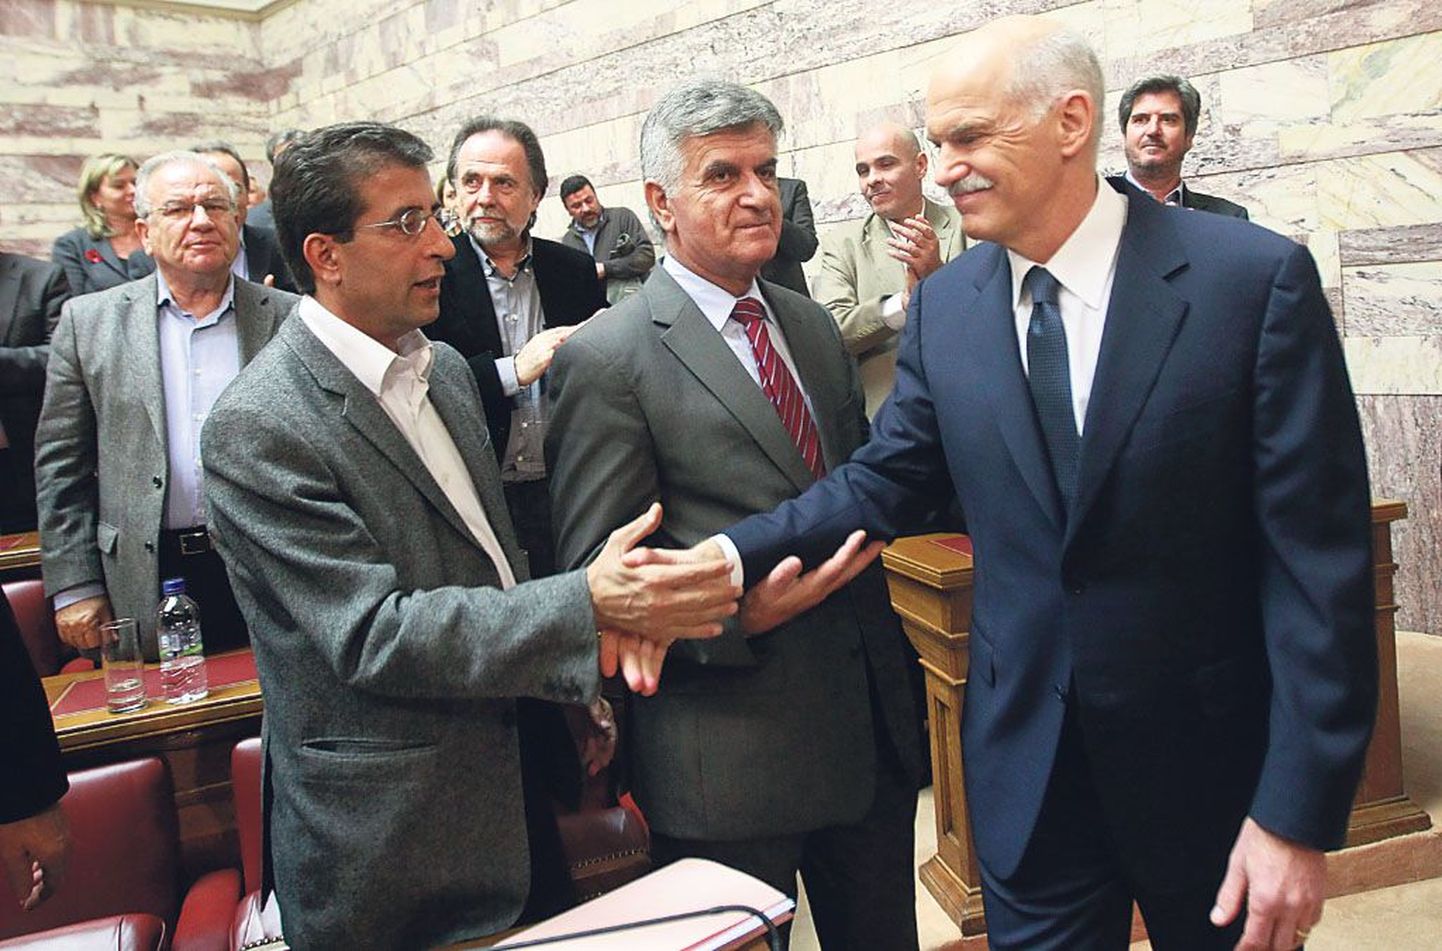 Kreeka peaministri Georgios Papandreou (paremal) otsus panna Euroopa Liidu värskeim abipakkumine rahvahääletusele viis börsid langusse, sest kui referendum peaks toimuma, oleks kreeklaste ei-sõna üsna kindel.